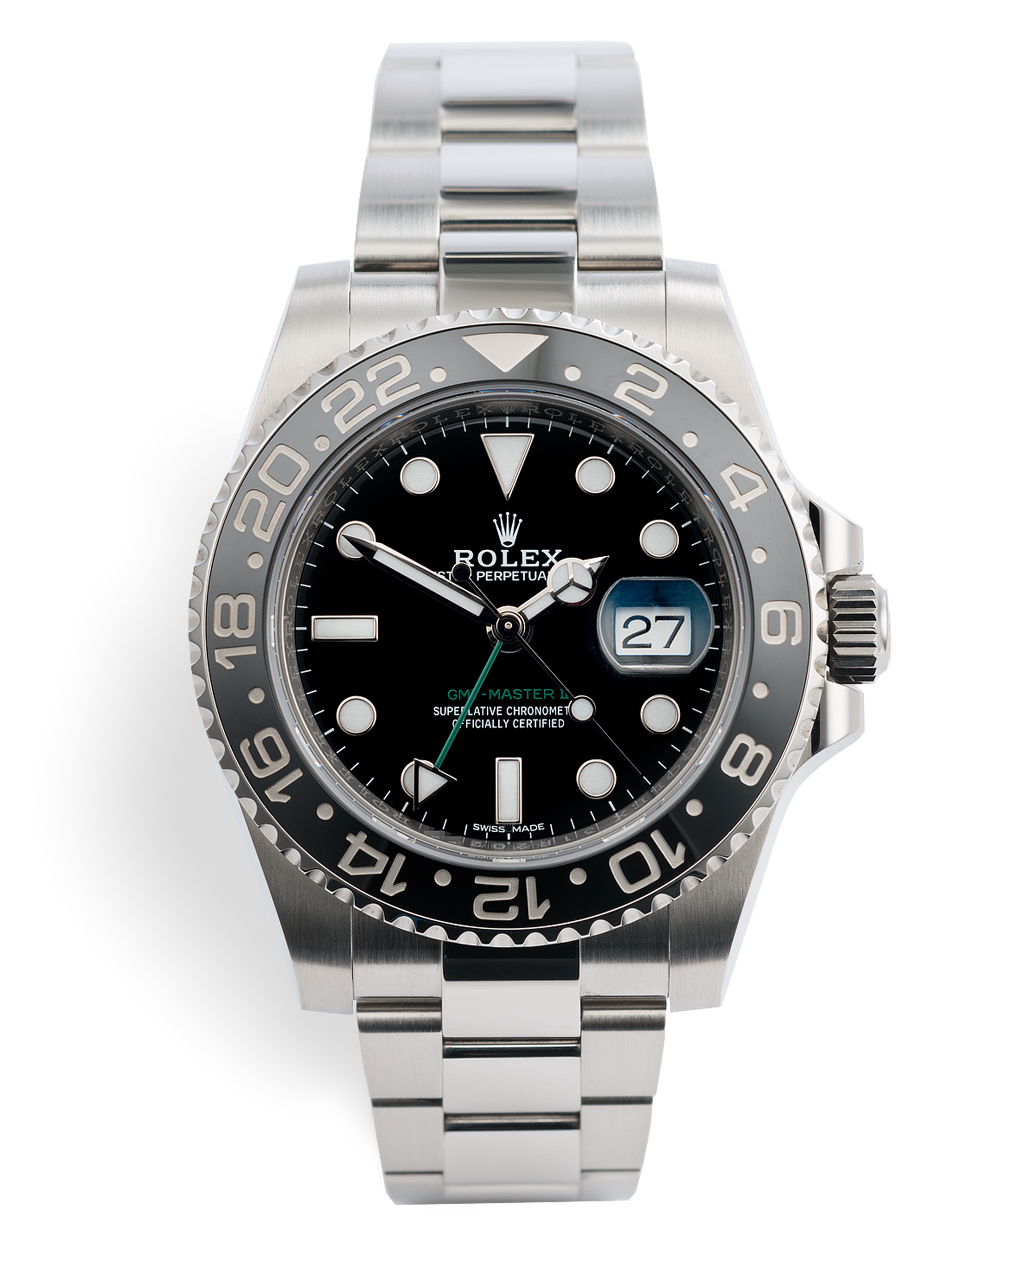 Rolex GMT-Master II Watches | ref 116710LN | Rolex Warranty to 2023 ...